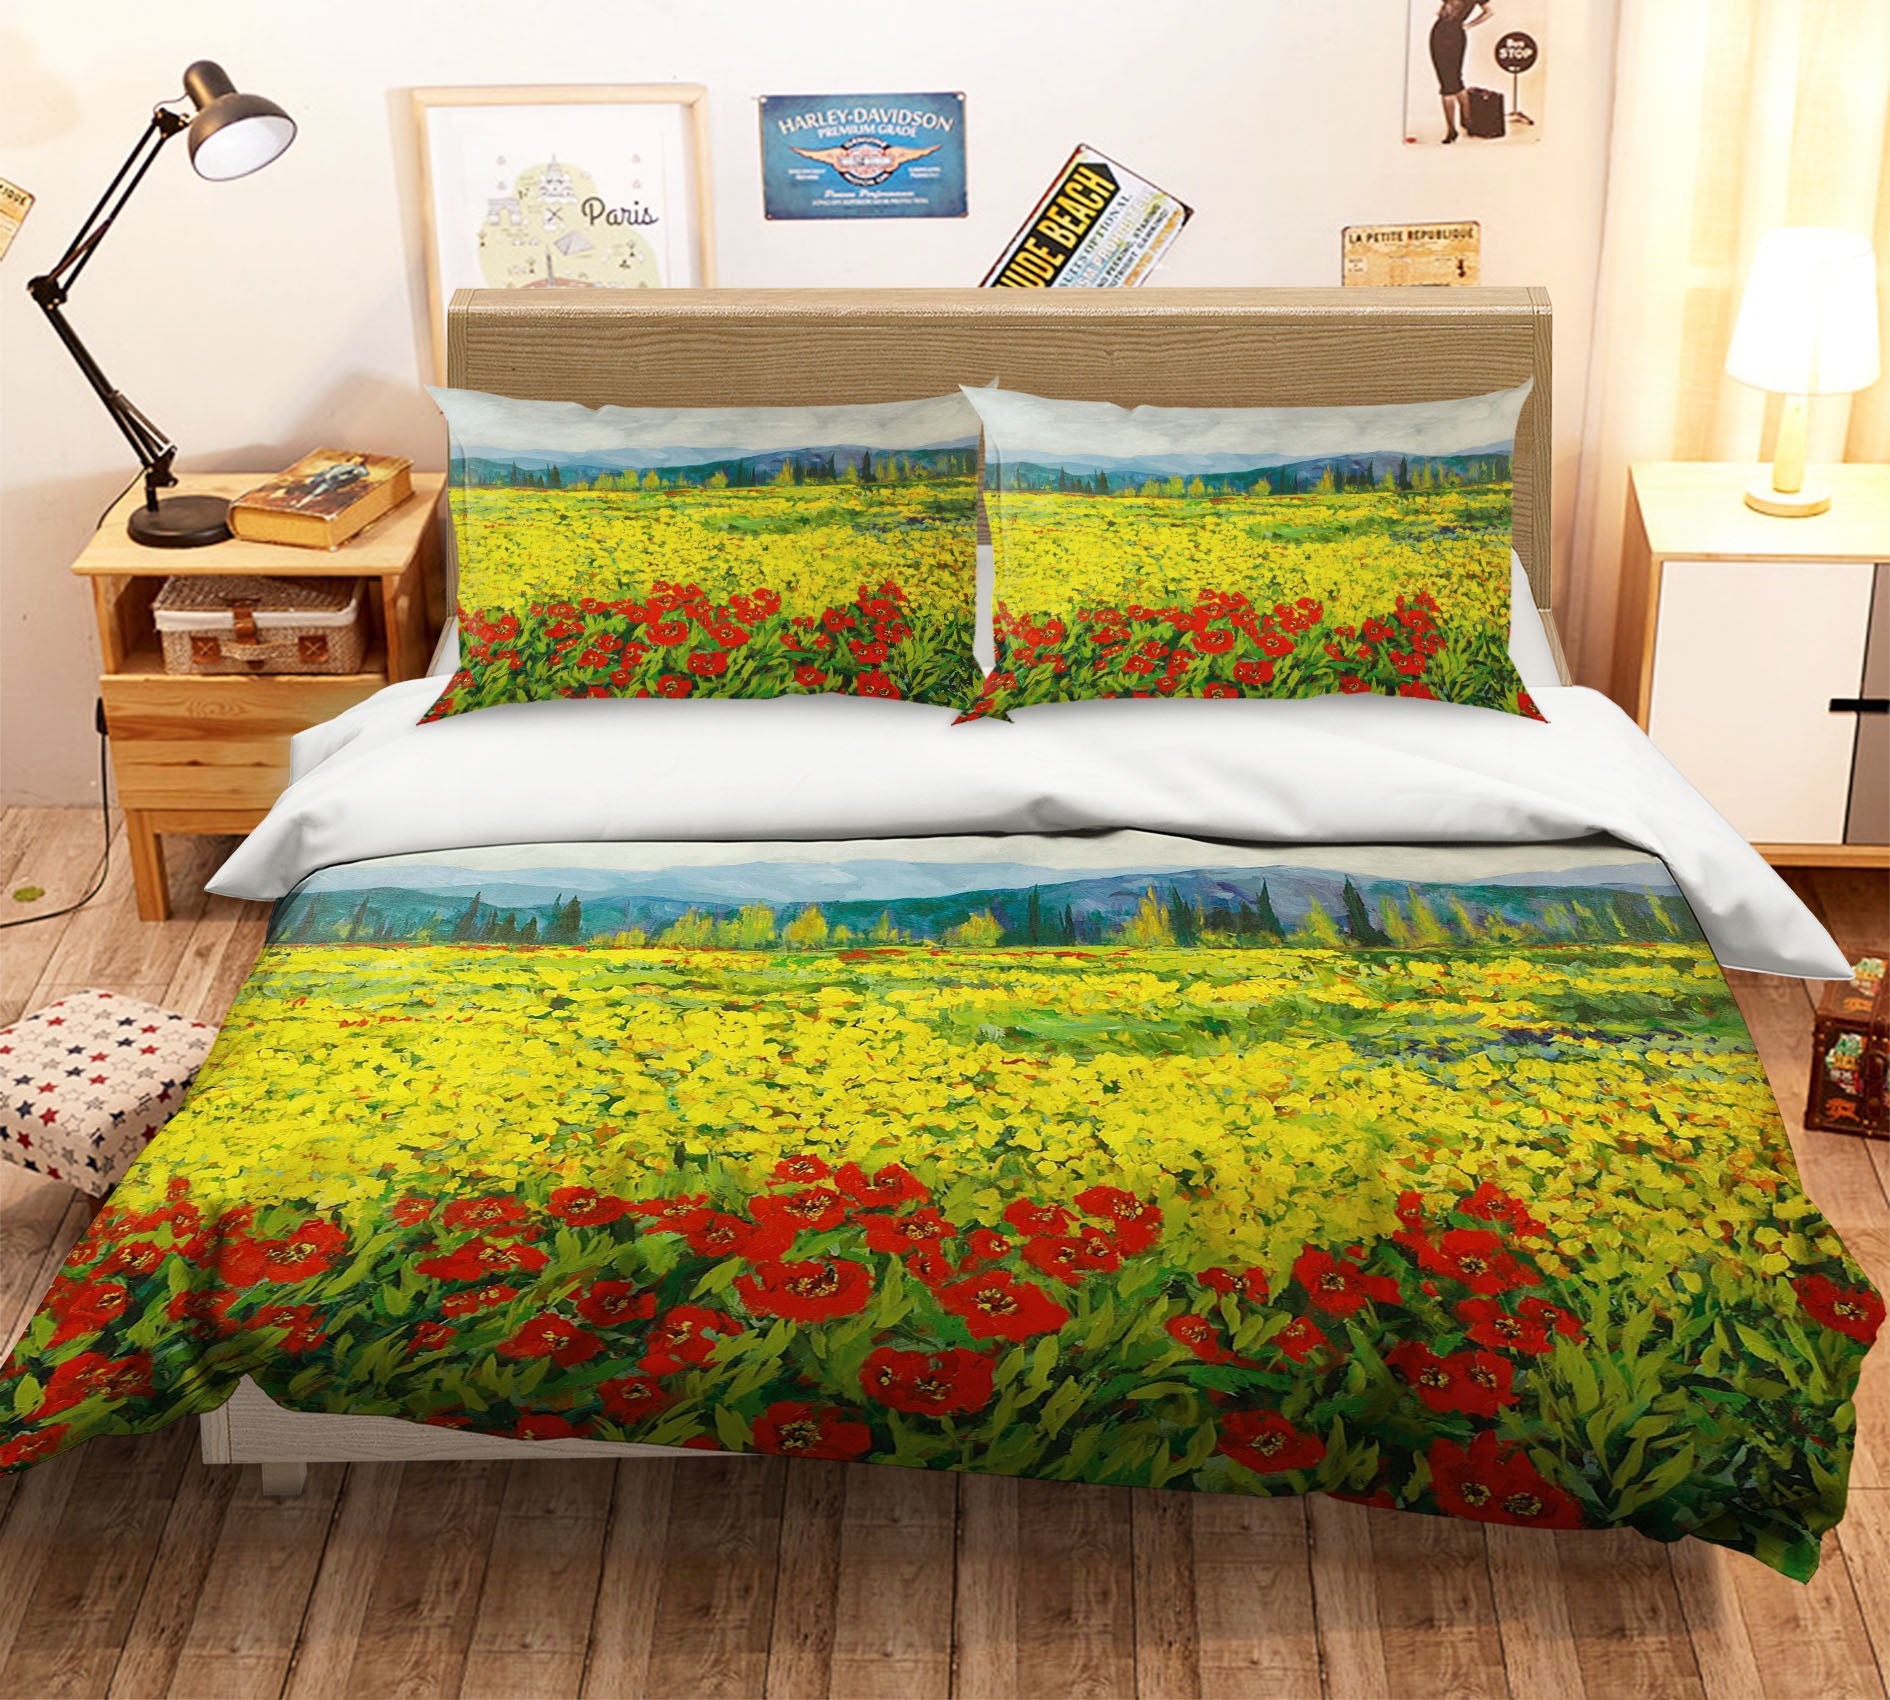 3D Rose Hanada 1013 Allan P. Friedlander Bedding Bed Pillowcases Quilt